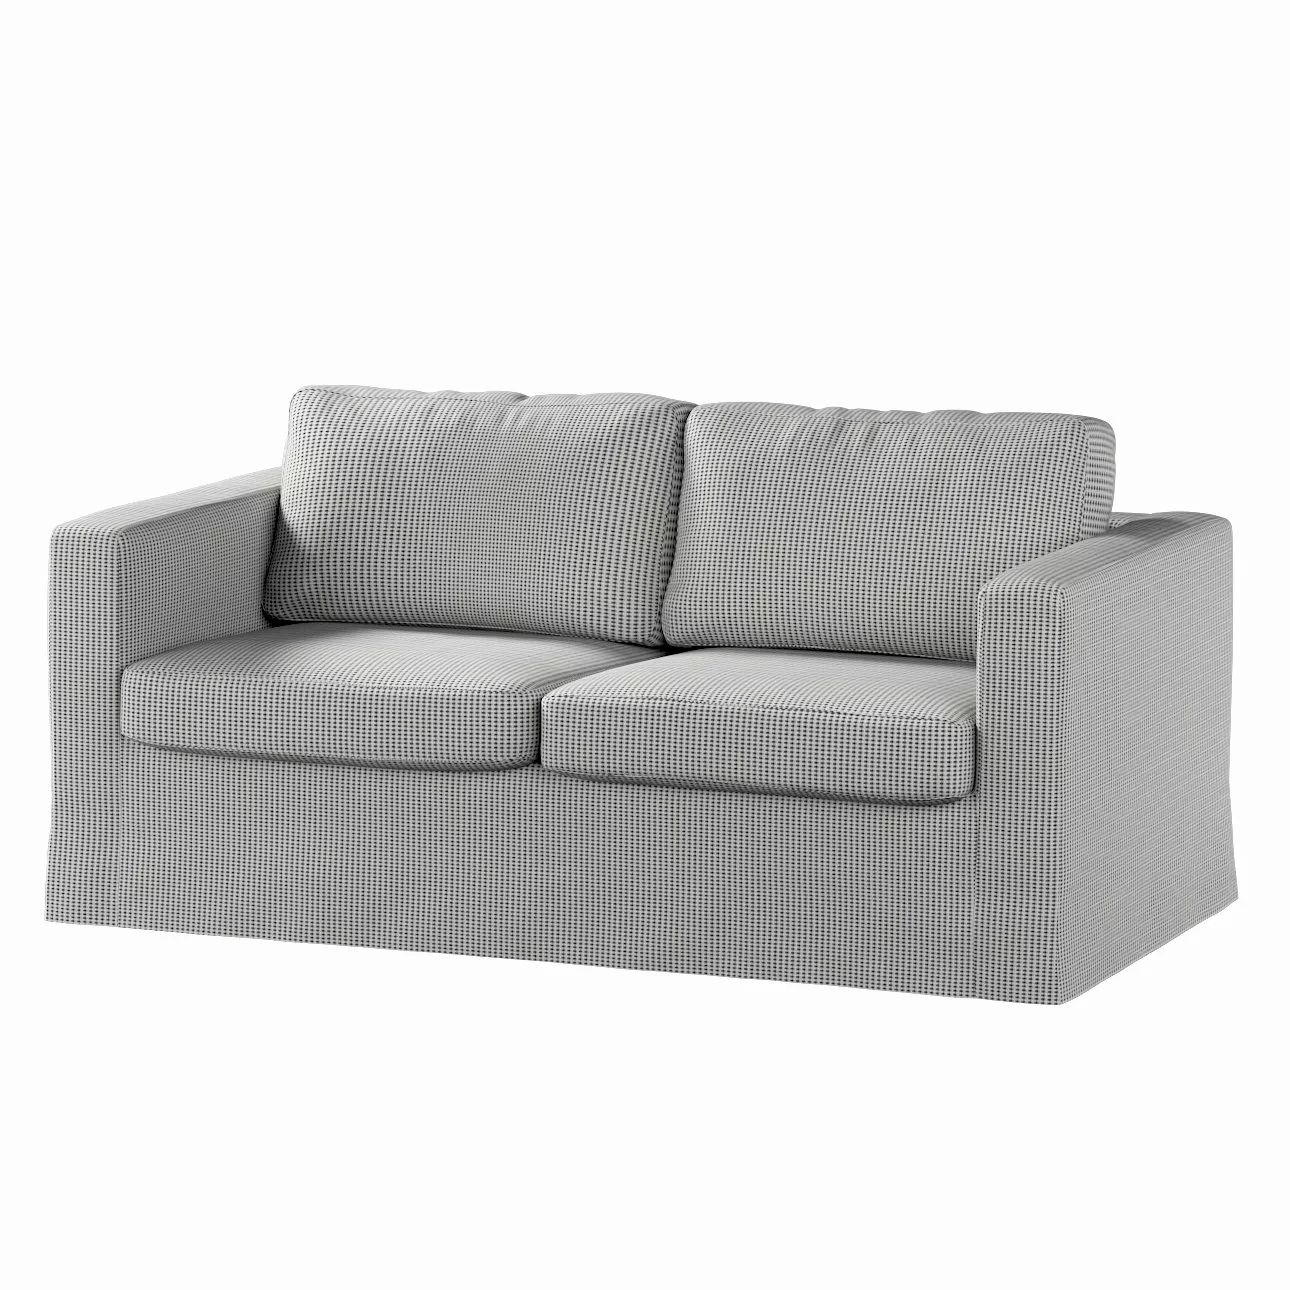 Bezug für Karlstad 2-Sitzer Sofa nicht ausklappbar, lang, schwarz-beige, So günstig online kaufen